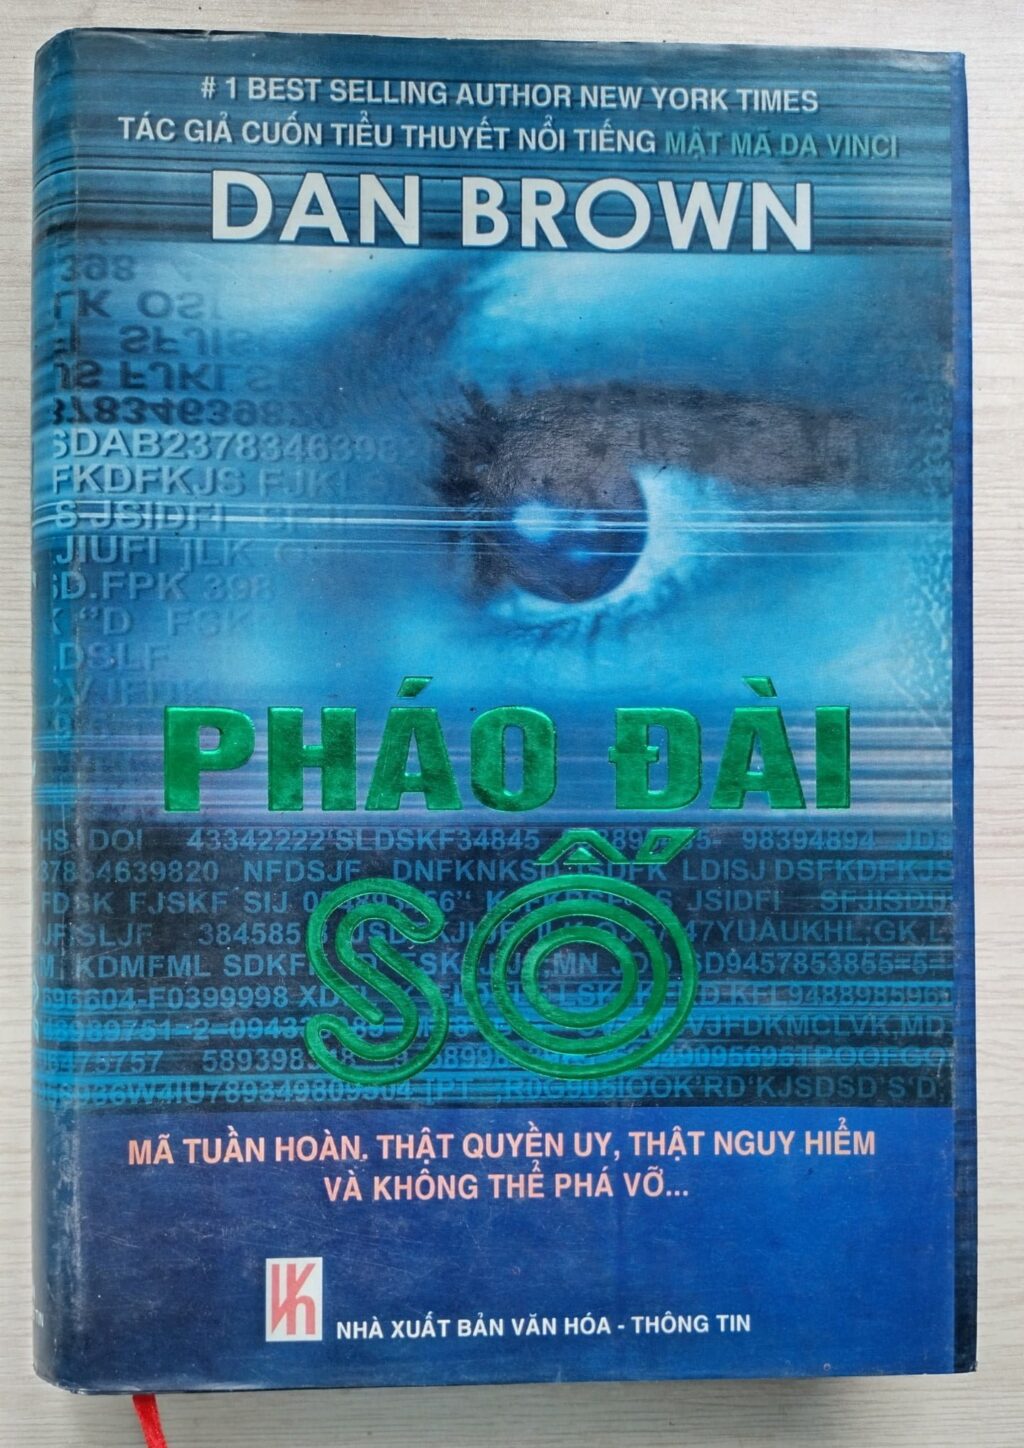 Phao dai so Dan Brown